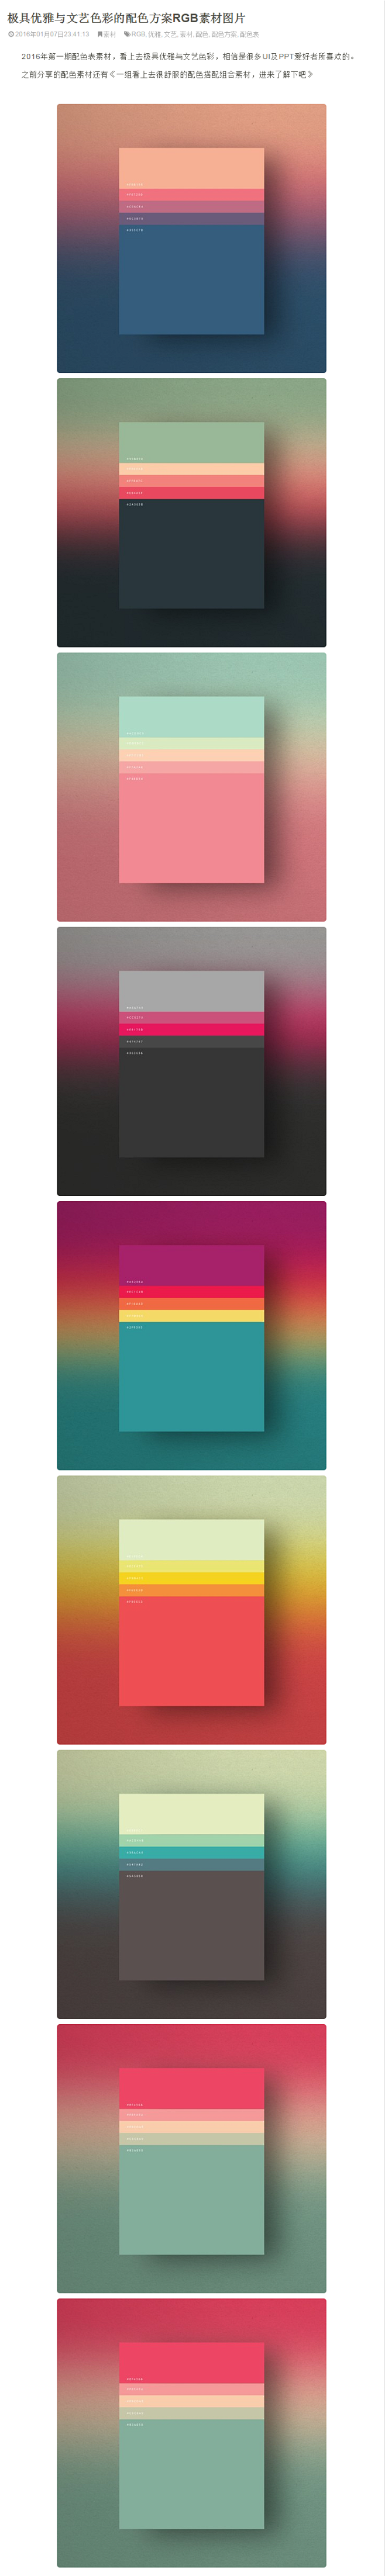 极具优雅与文艺色彩的配色方案RGB素材图...